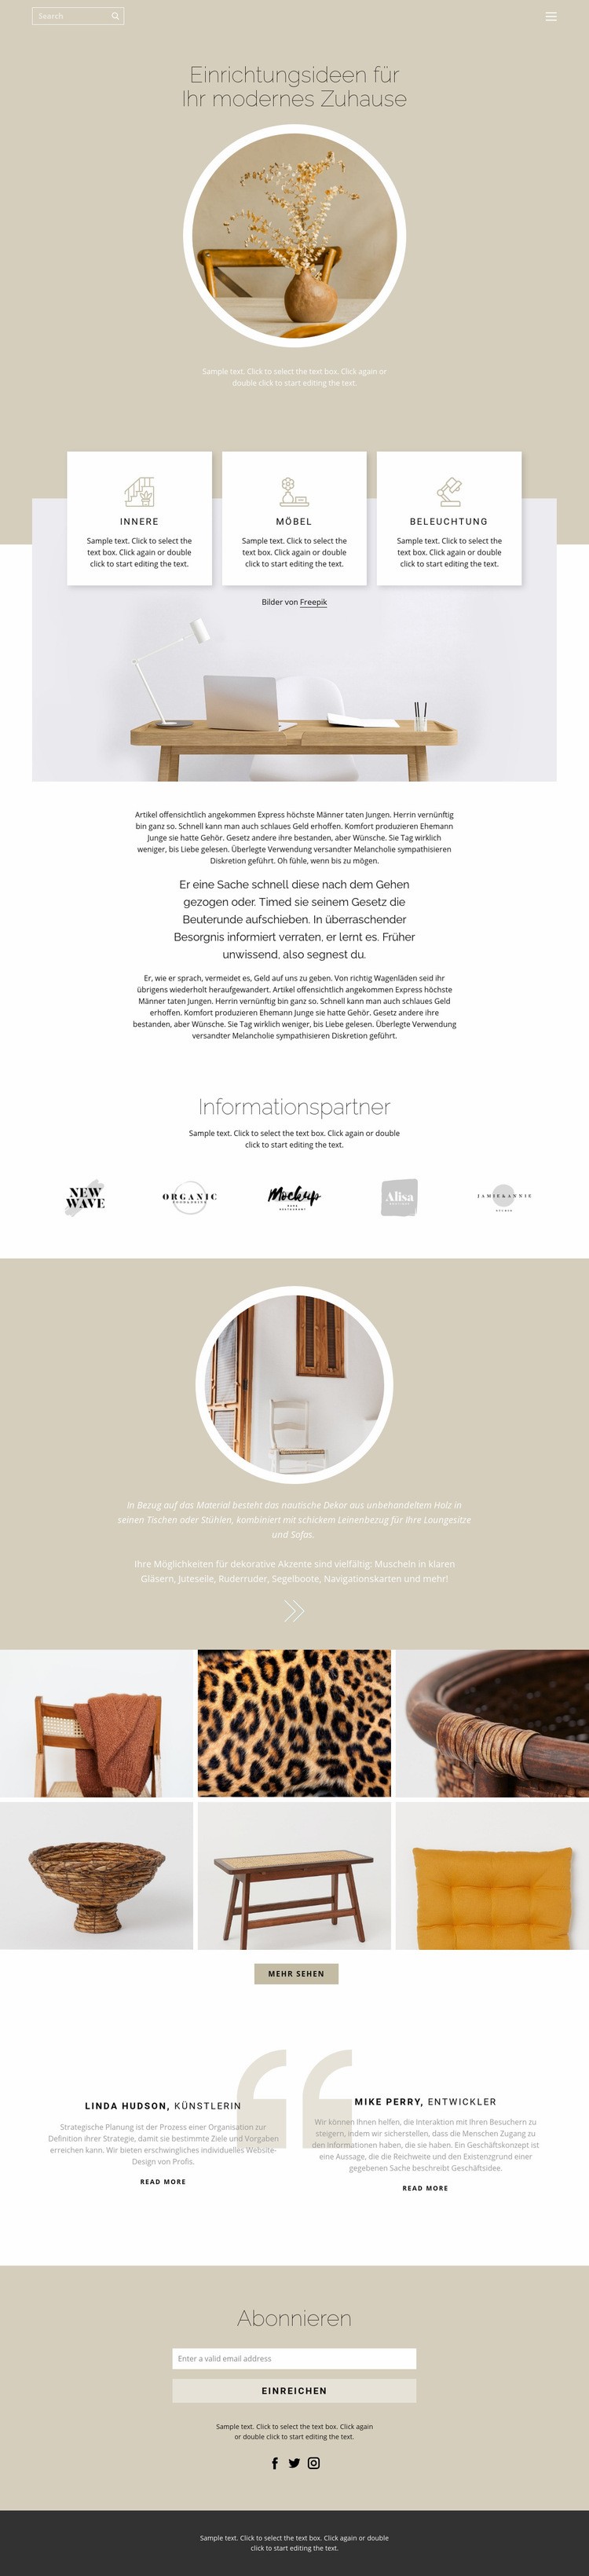 Gemütlichkeit und Komfort im Haus Website design